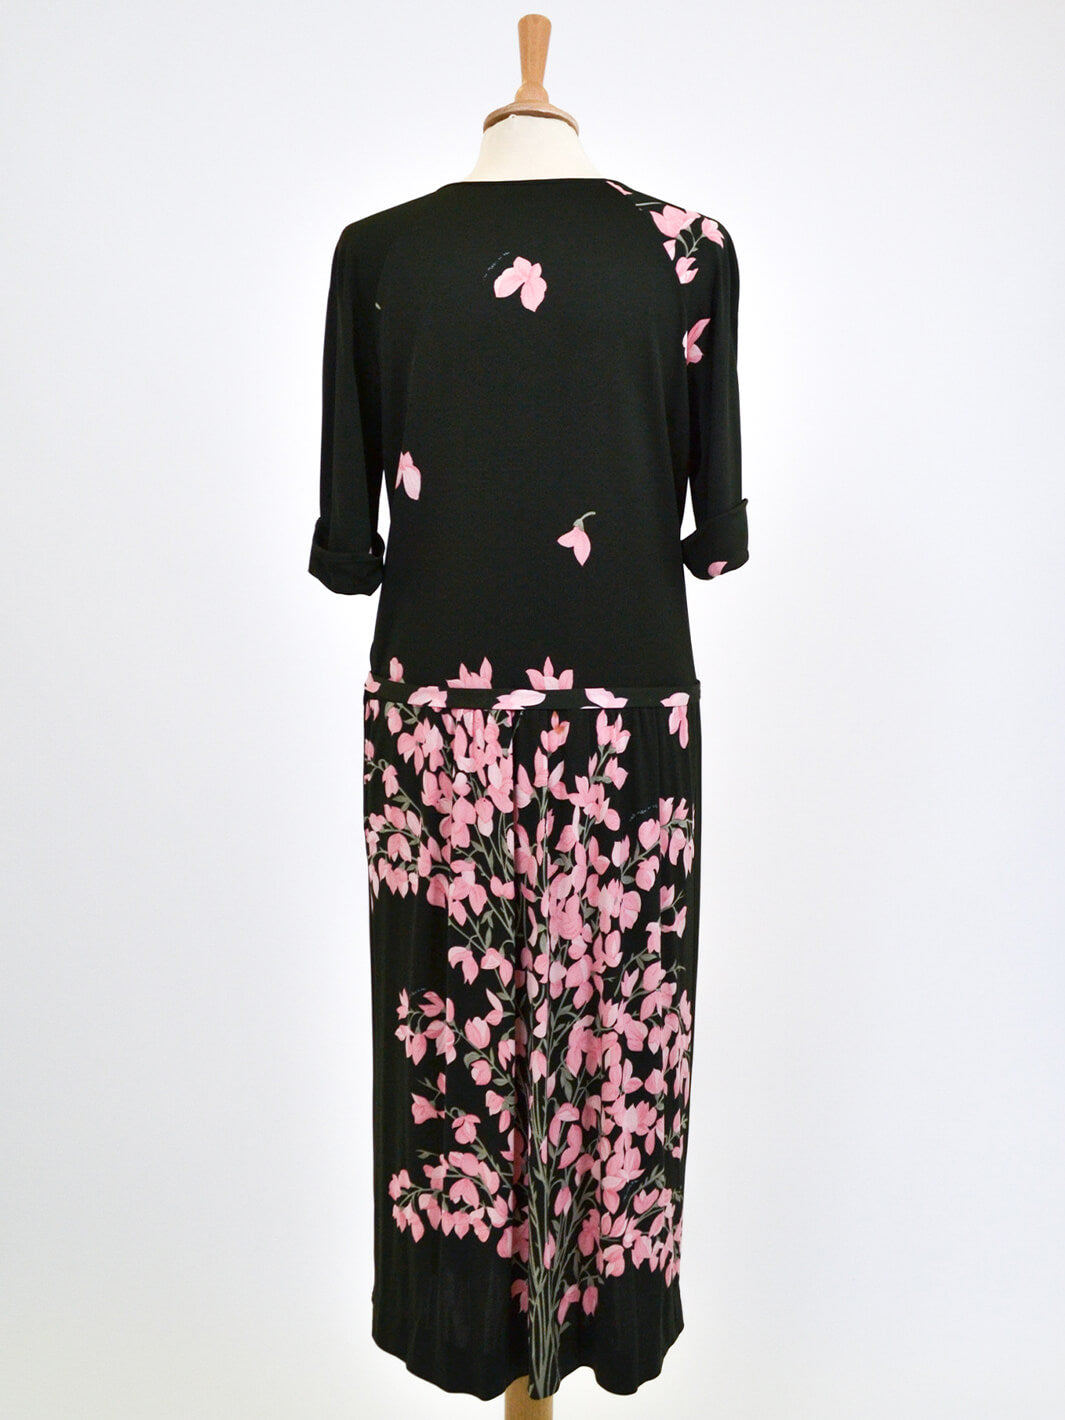 De Parisini olive dress with pink flowers, 70s